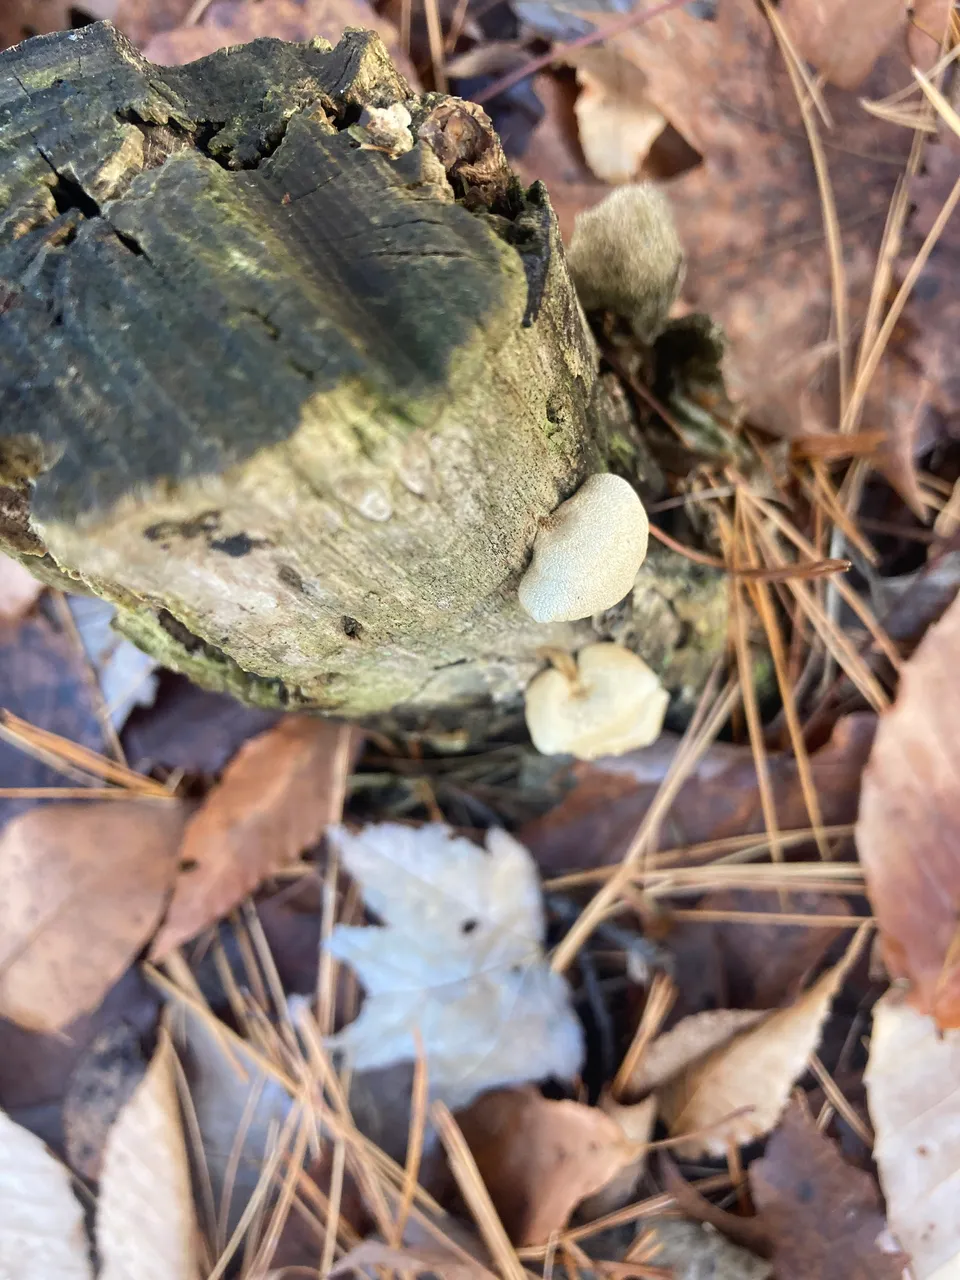 Shelf mushroom on stump